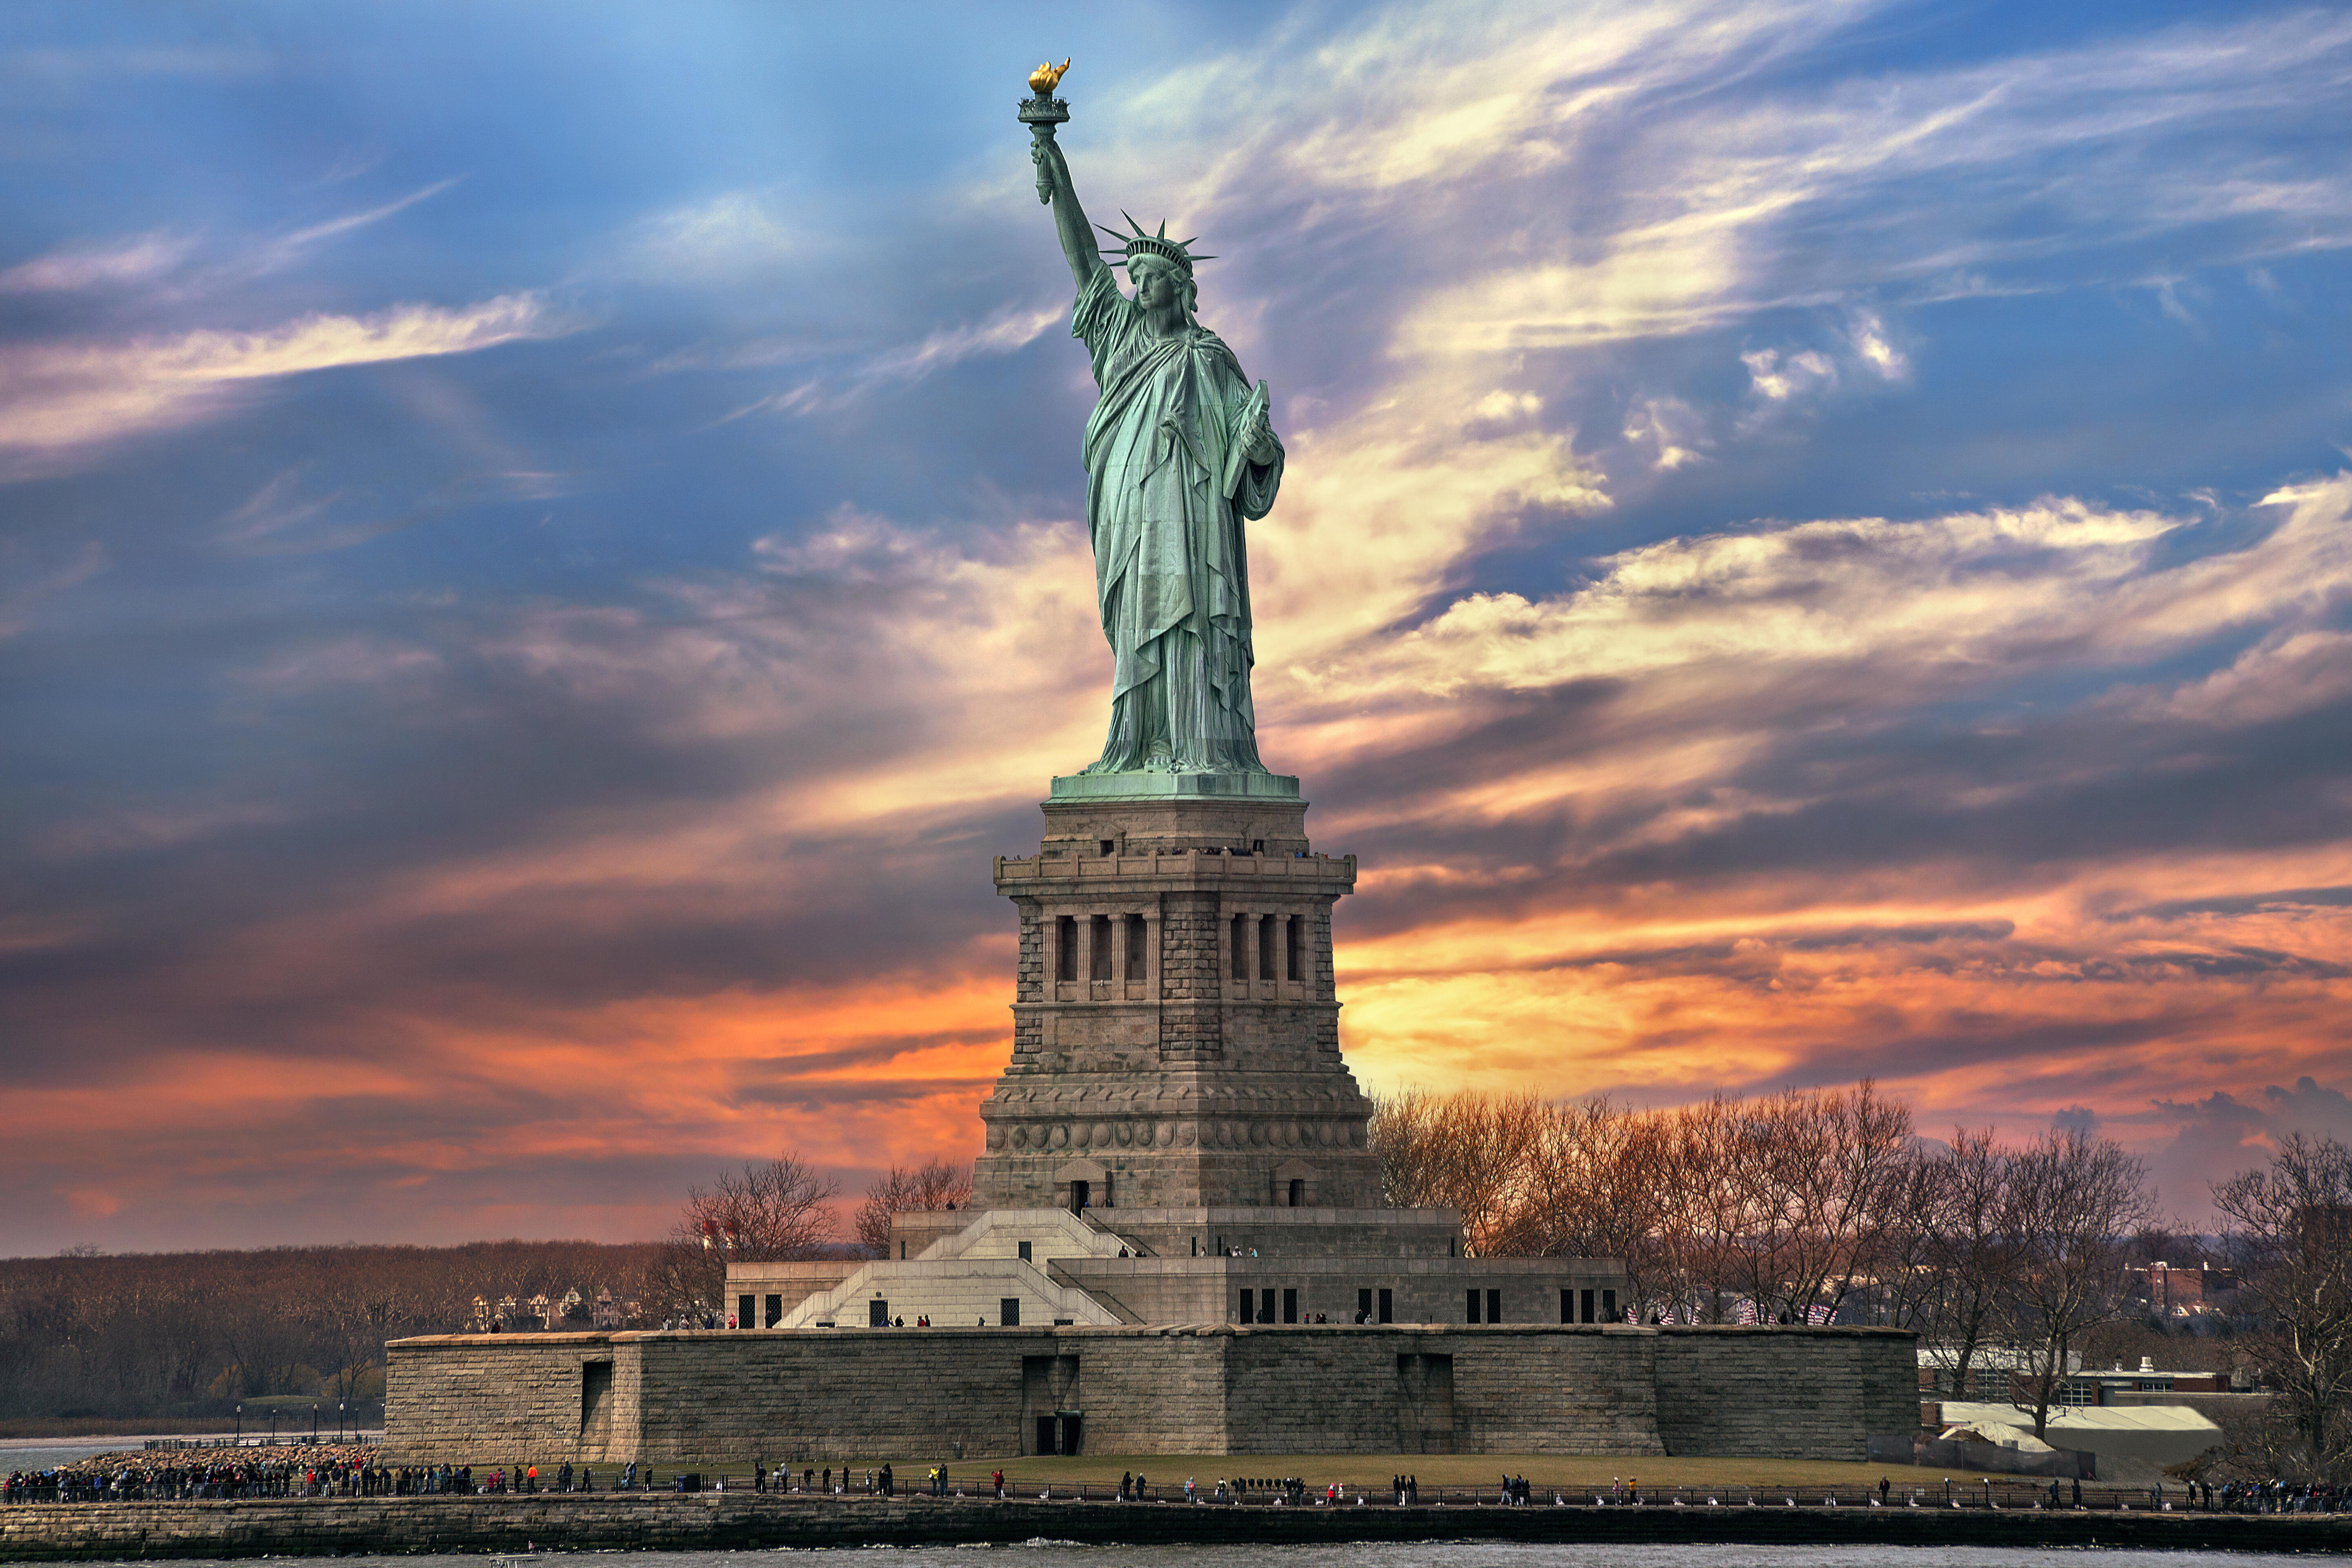 Libery. Статуя свободы Нью-Йорк. Нью Йорк стадия свободы. Нью-Йорк бстатуясвободы. Достопримечательности США статуя свободы.